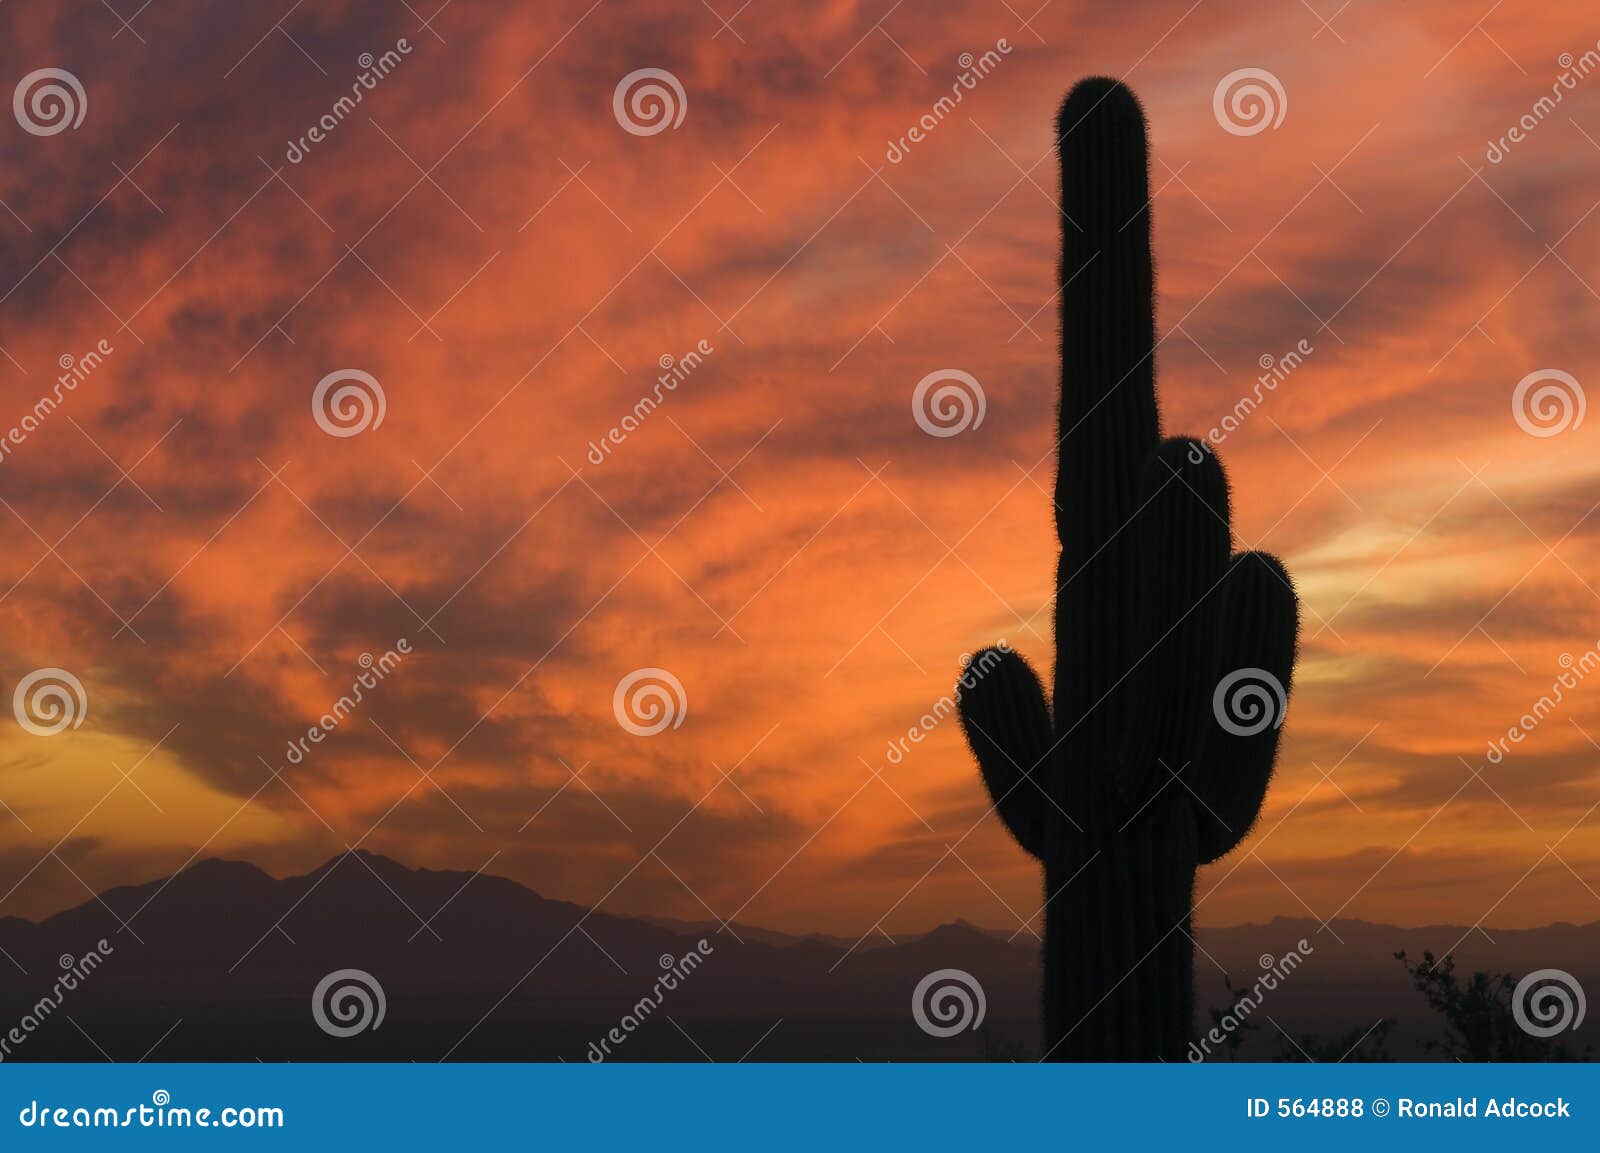 brilliant sunset over saguaro cactus and arizona's sonoran deser